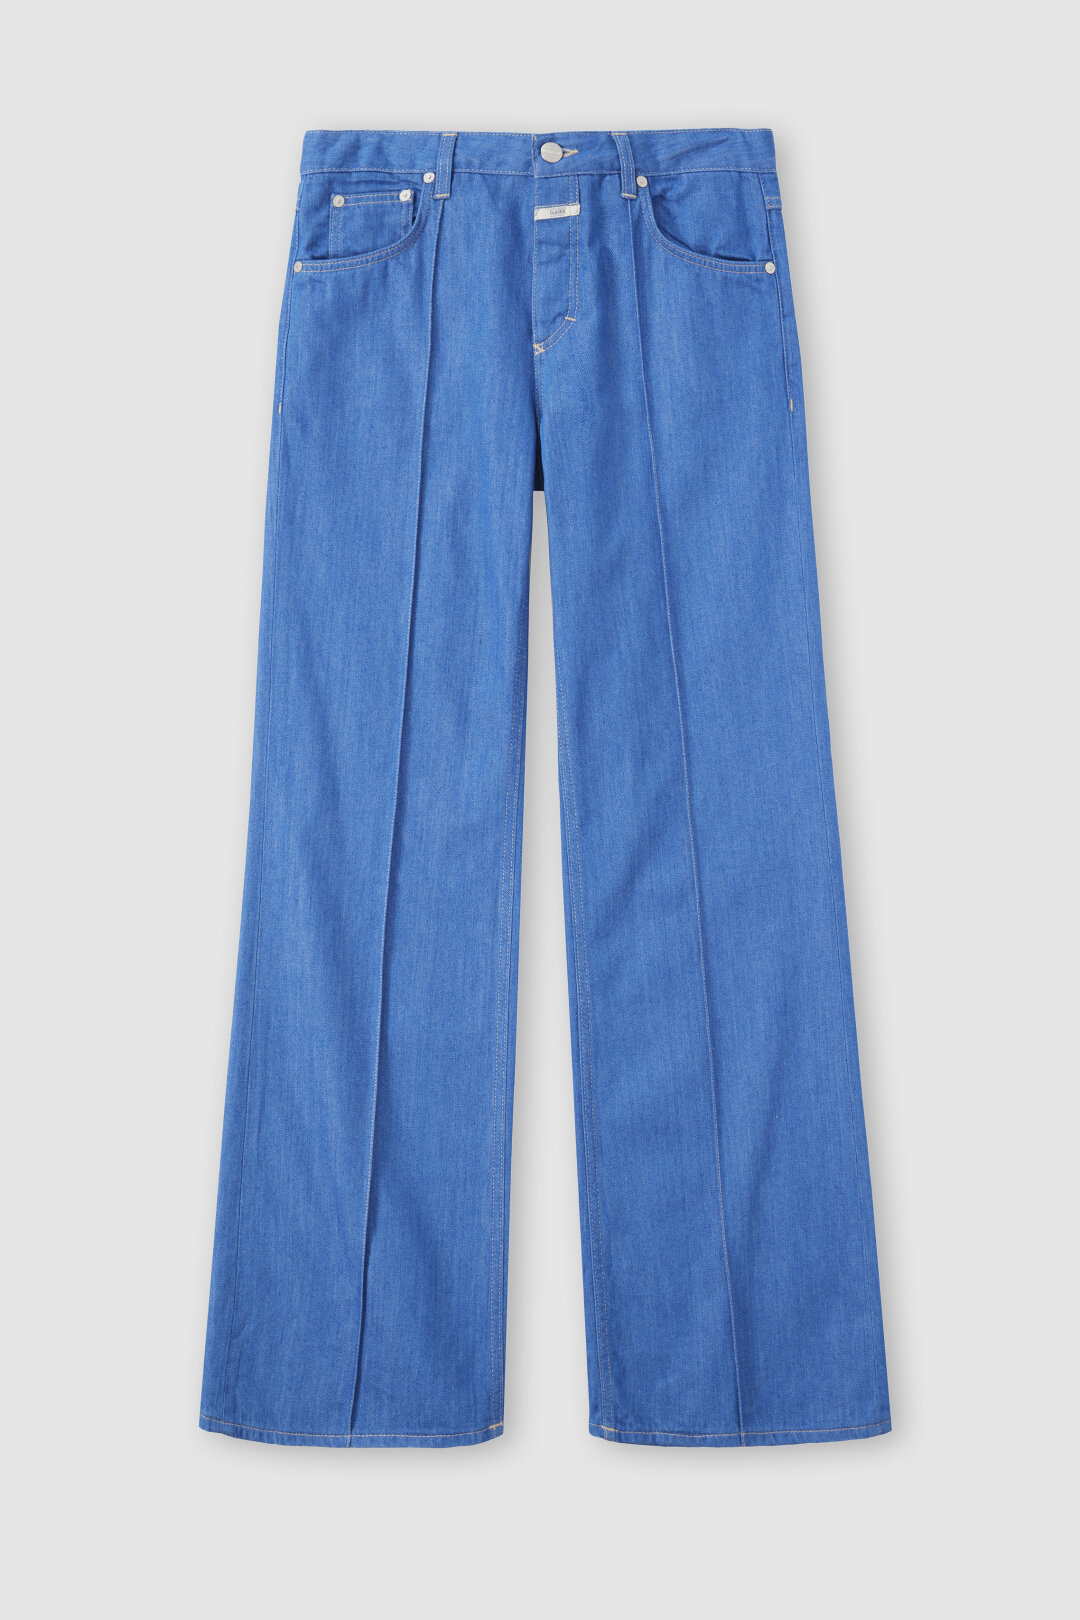 verybrain VP-110 Tweed pants：Blue93cmレングス - その他